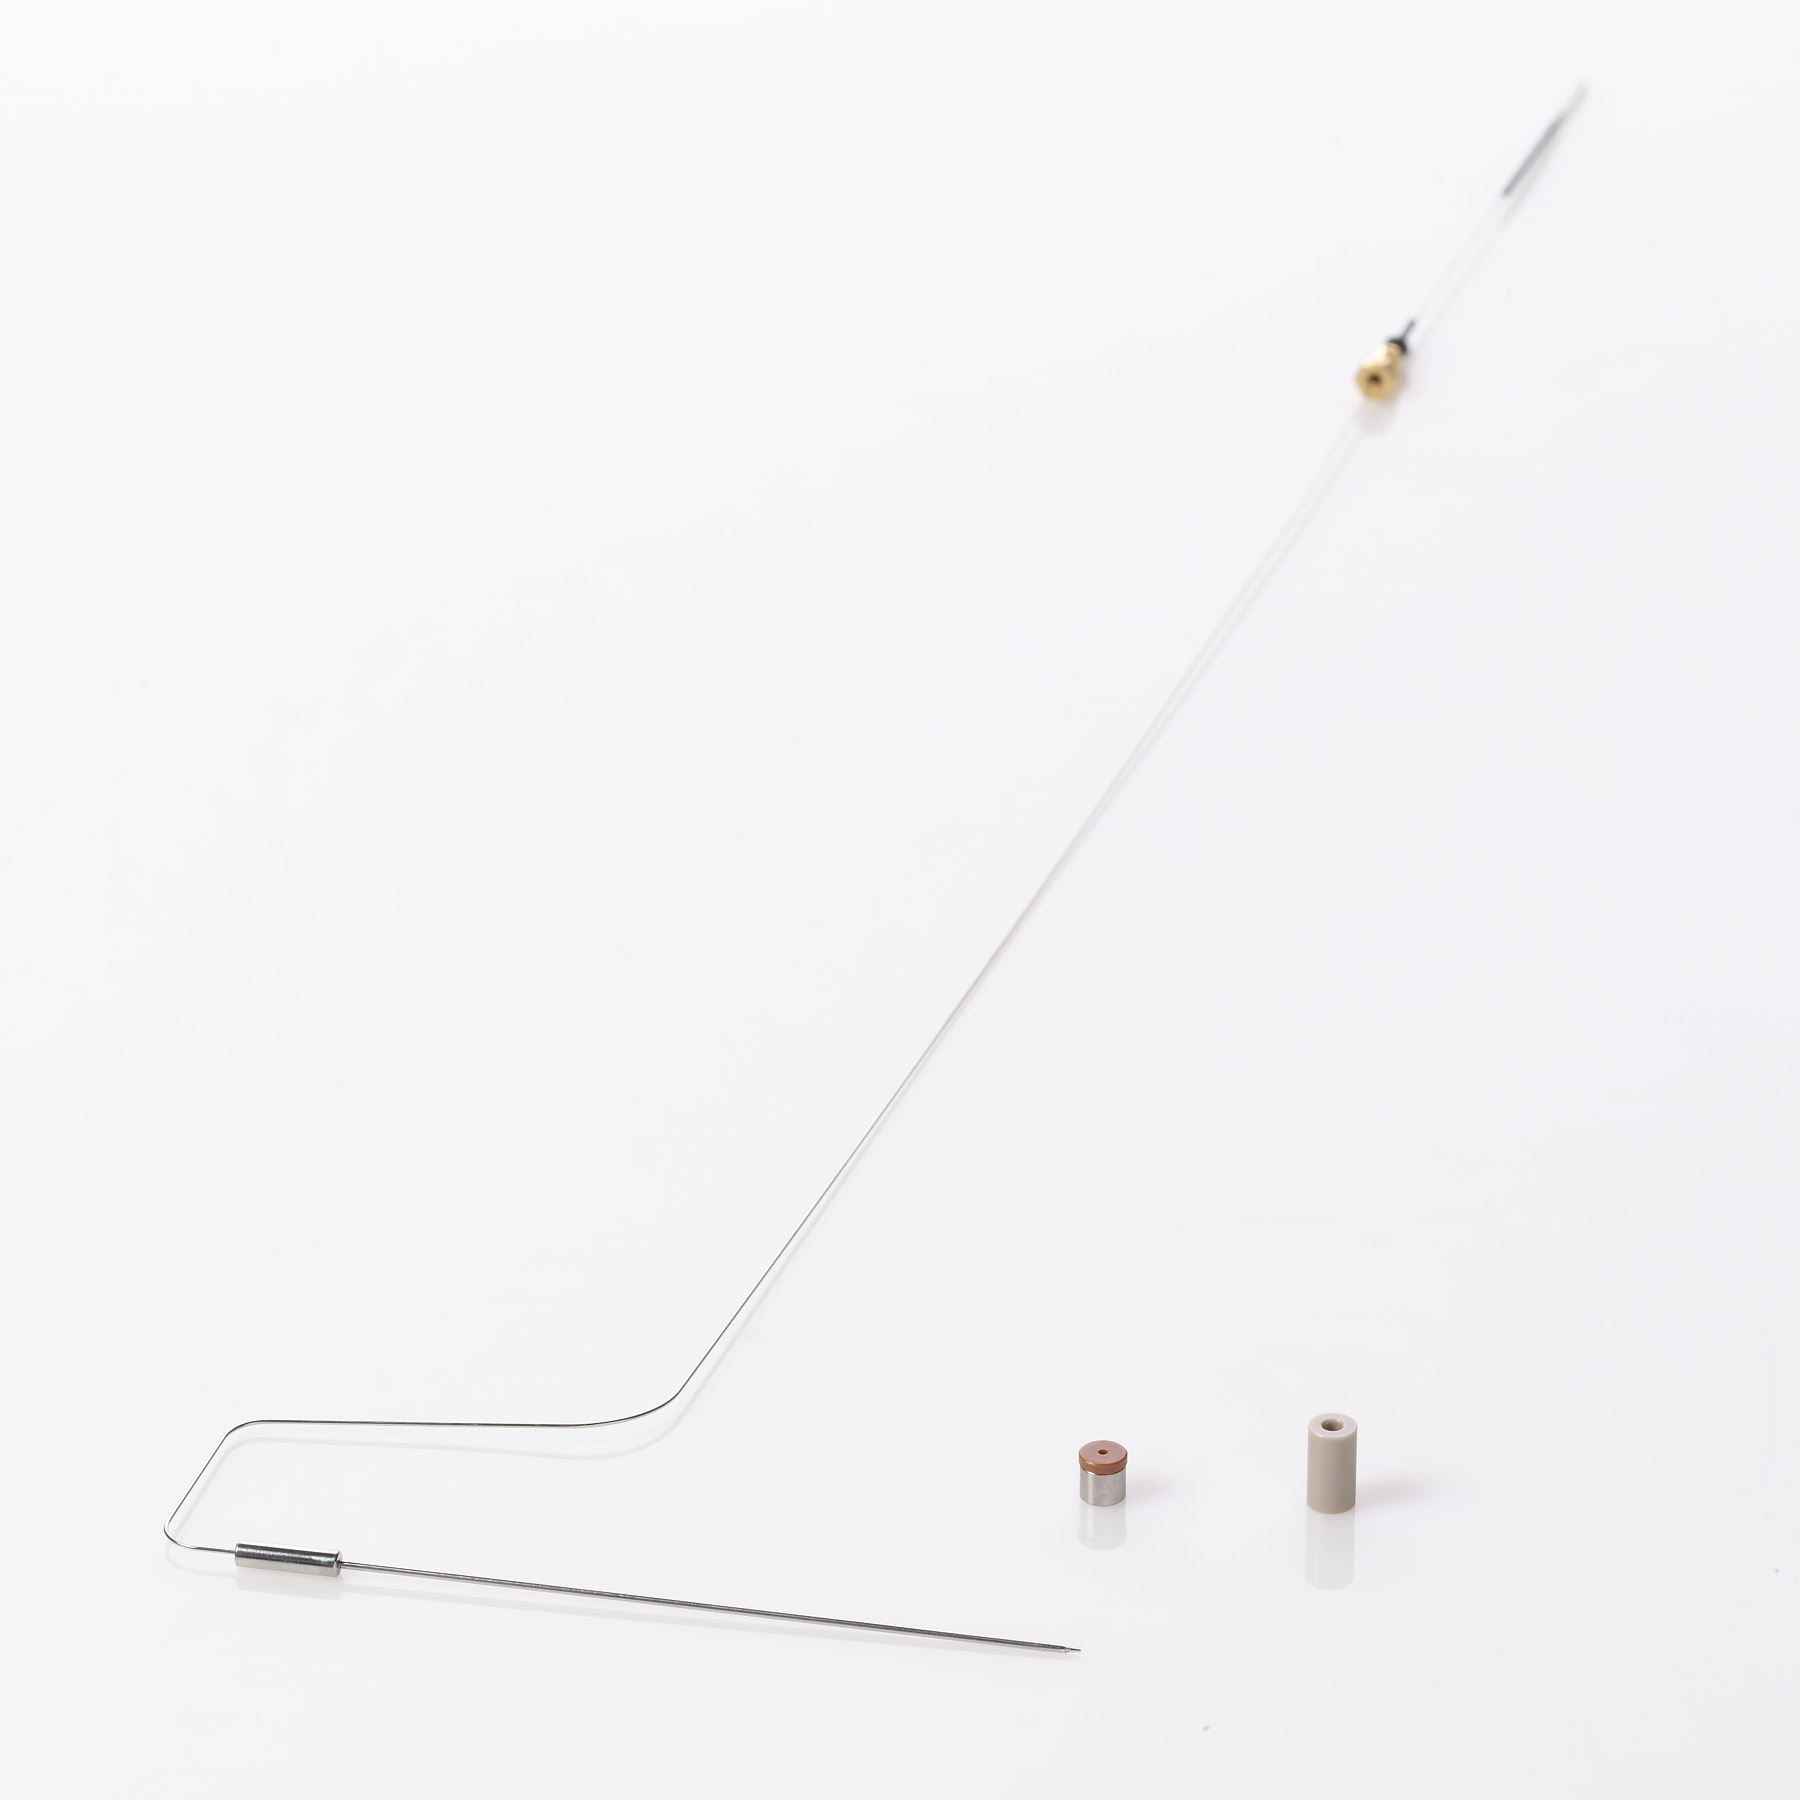 Sample Needle Kit, 15µL